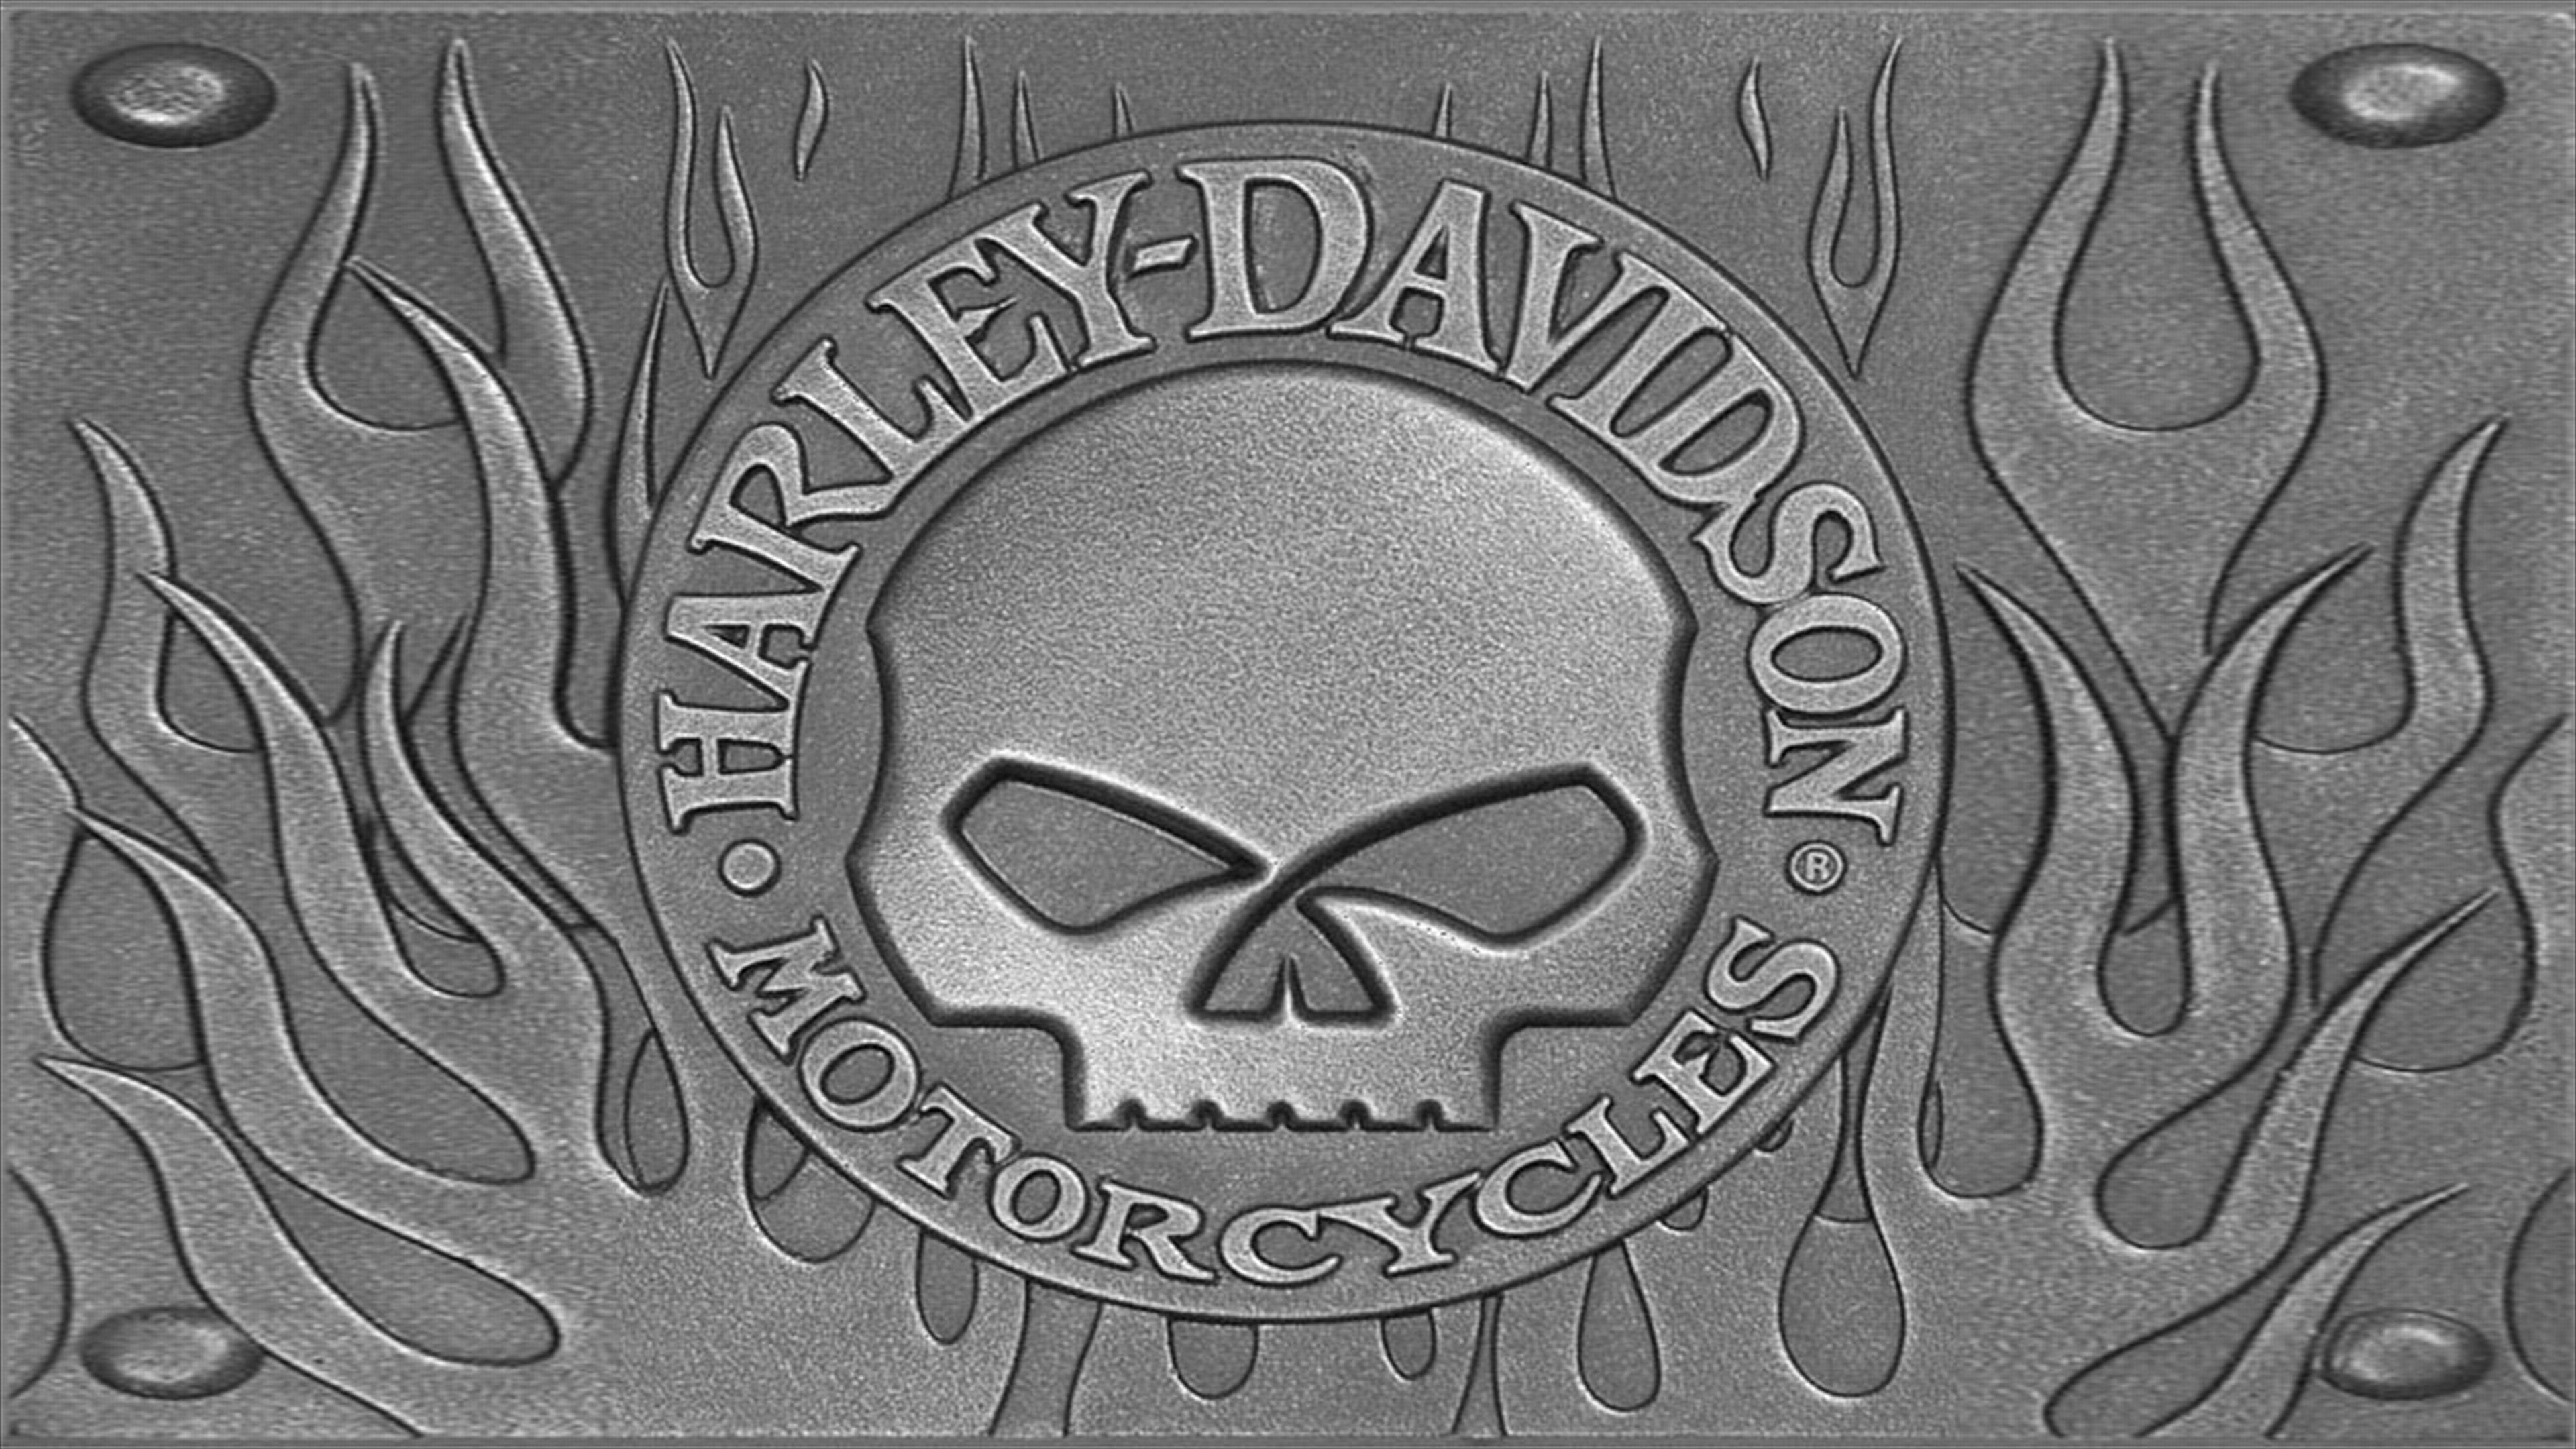 Harley Davidson 4k Ultra HD Wallpaper Background Image